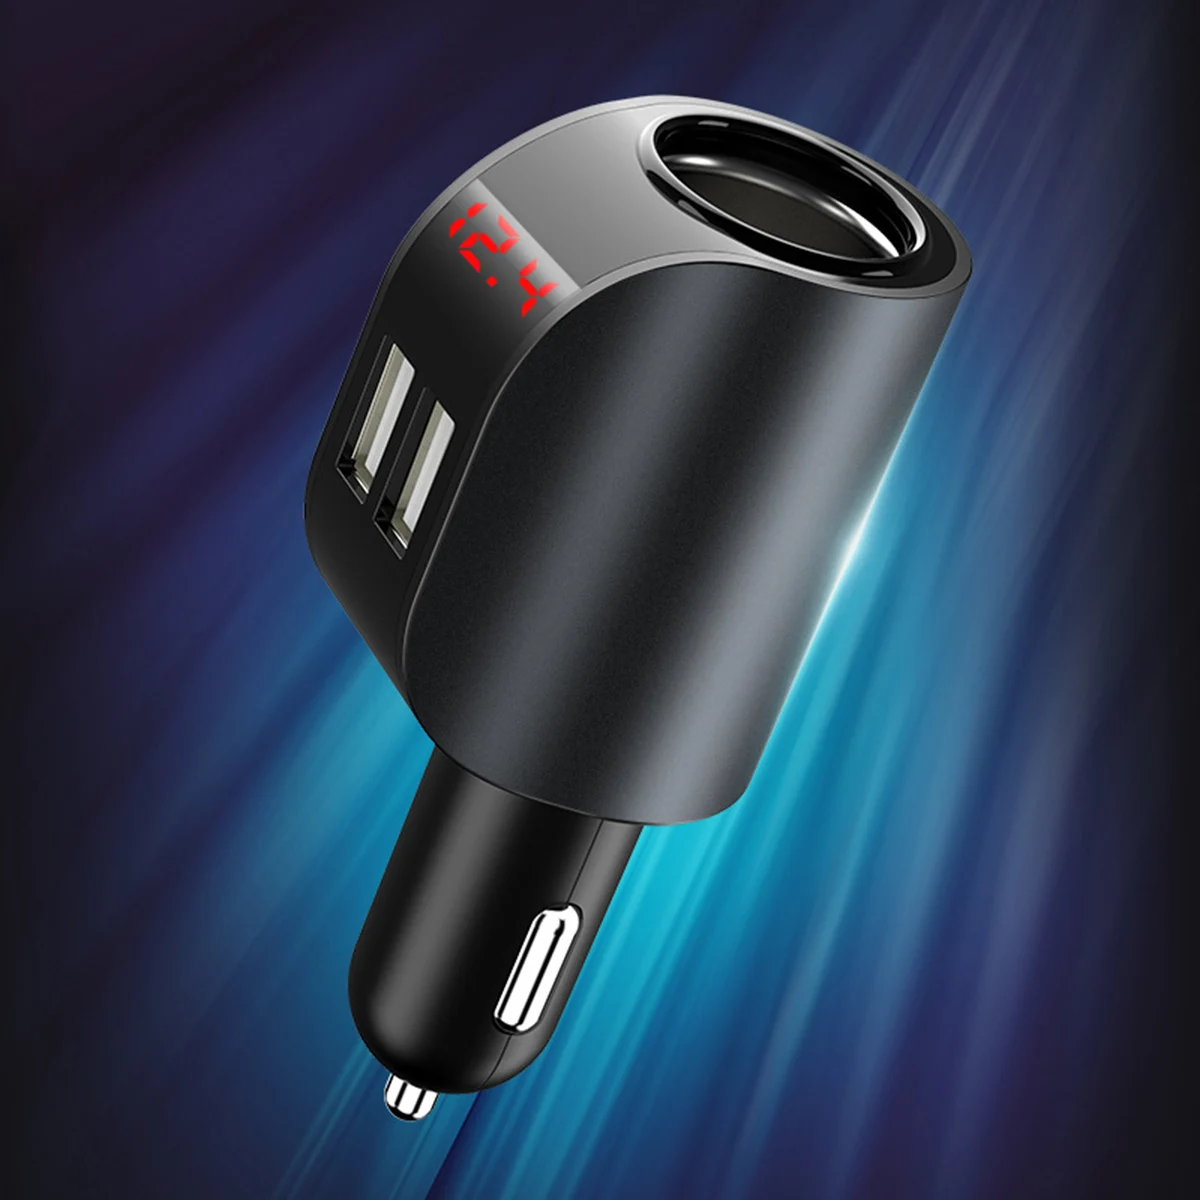 3.1A двойное USB Автомобильное зарядное устройство, зарядное устройство для мобильного телефона, 12-24 В, автомобильный прикуриватель, быстрая зарядка, адаптер с цифровым дисплеем